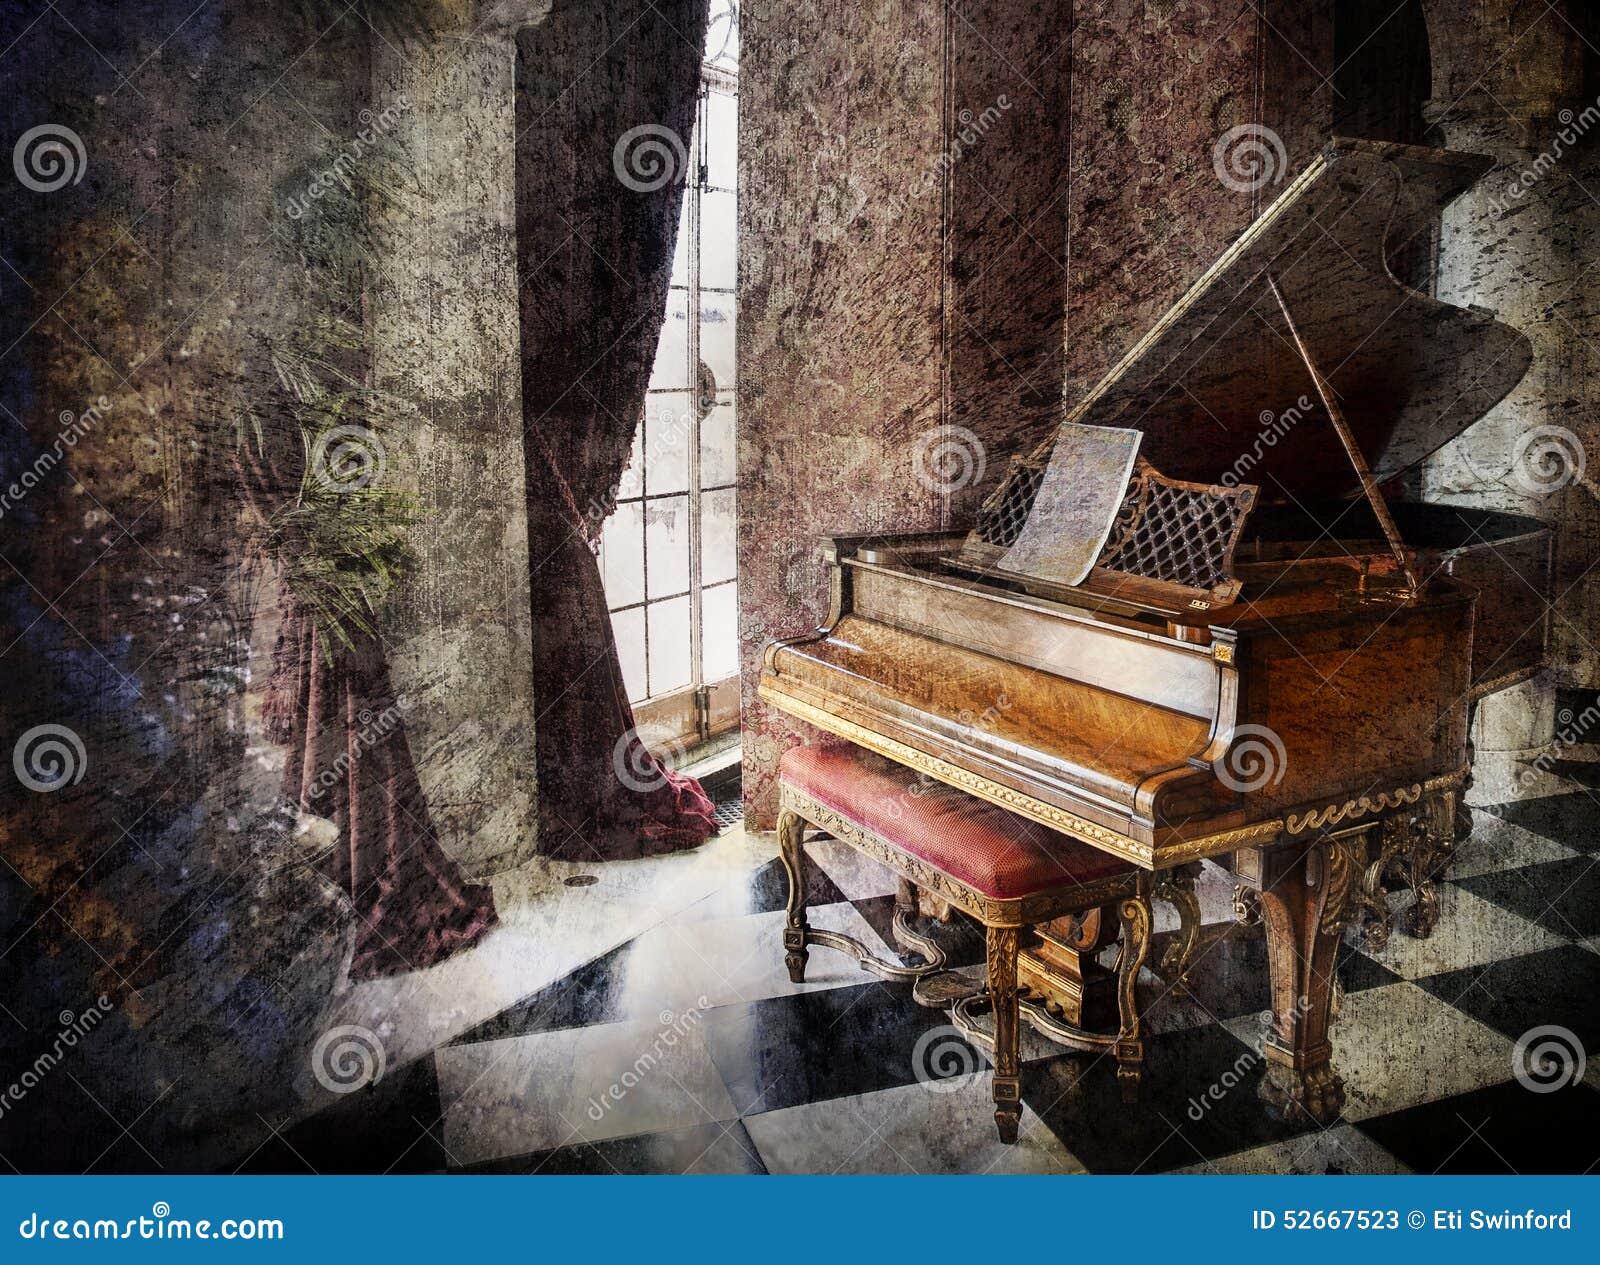 grand piano in music chamber